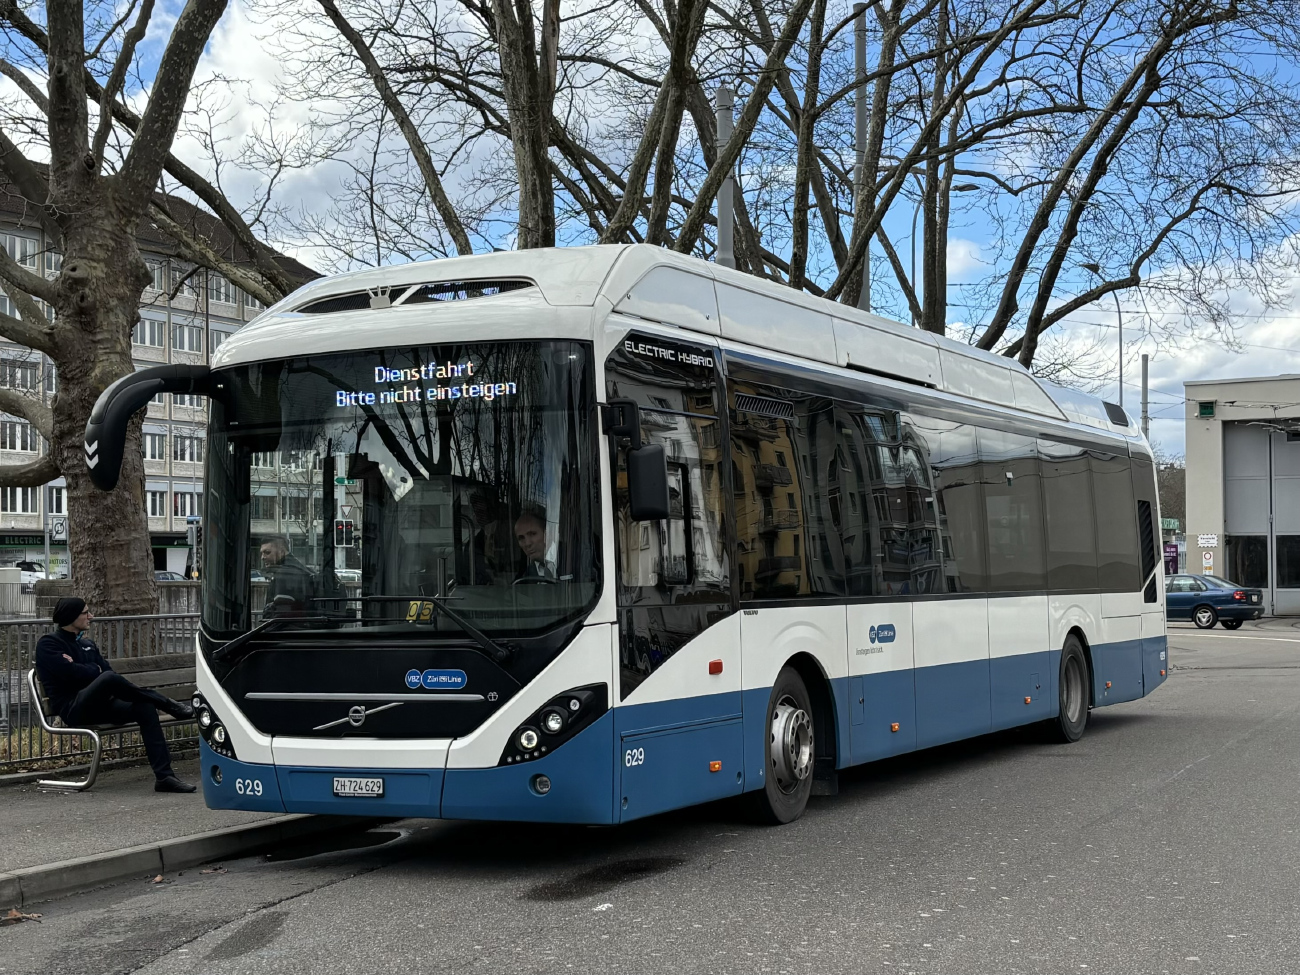 Zurich, Volvo 7900 Electric Hybrid # 629